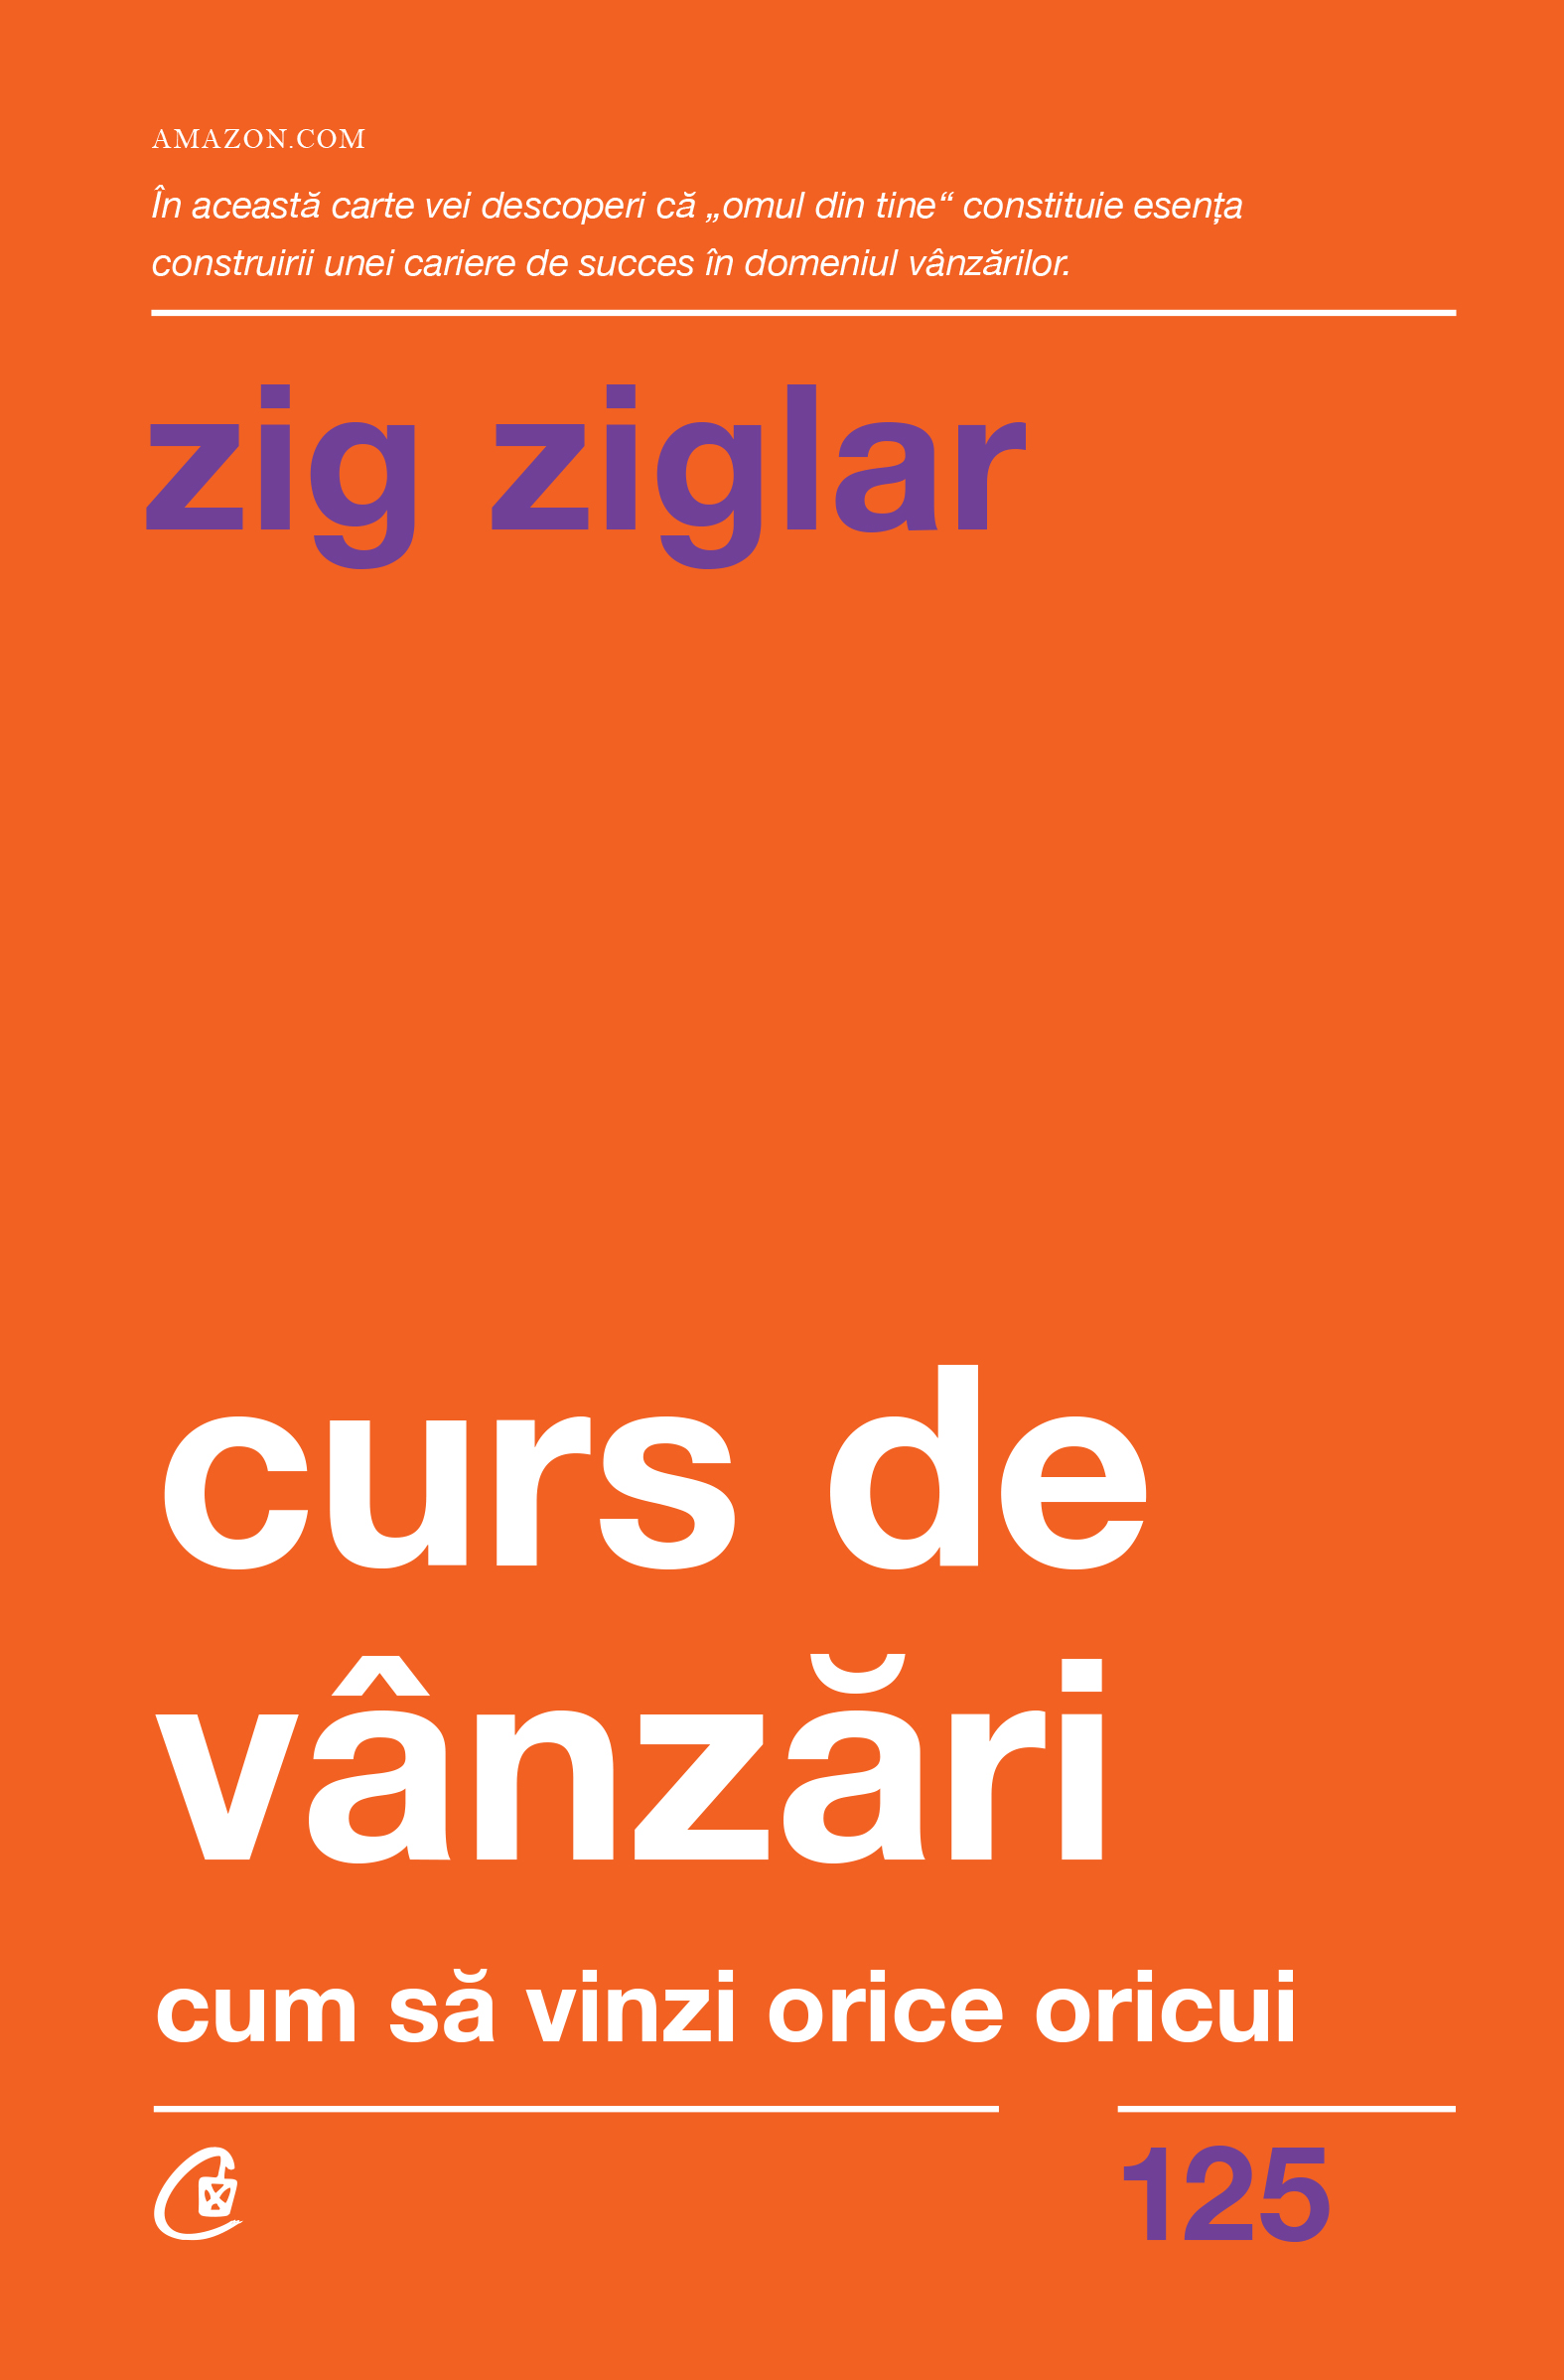 Curs de vanzari | Zig Ziglar carturesti.ro